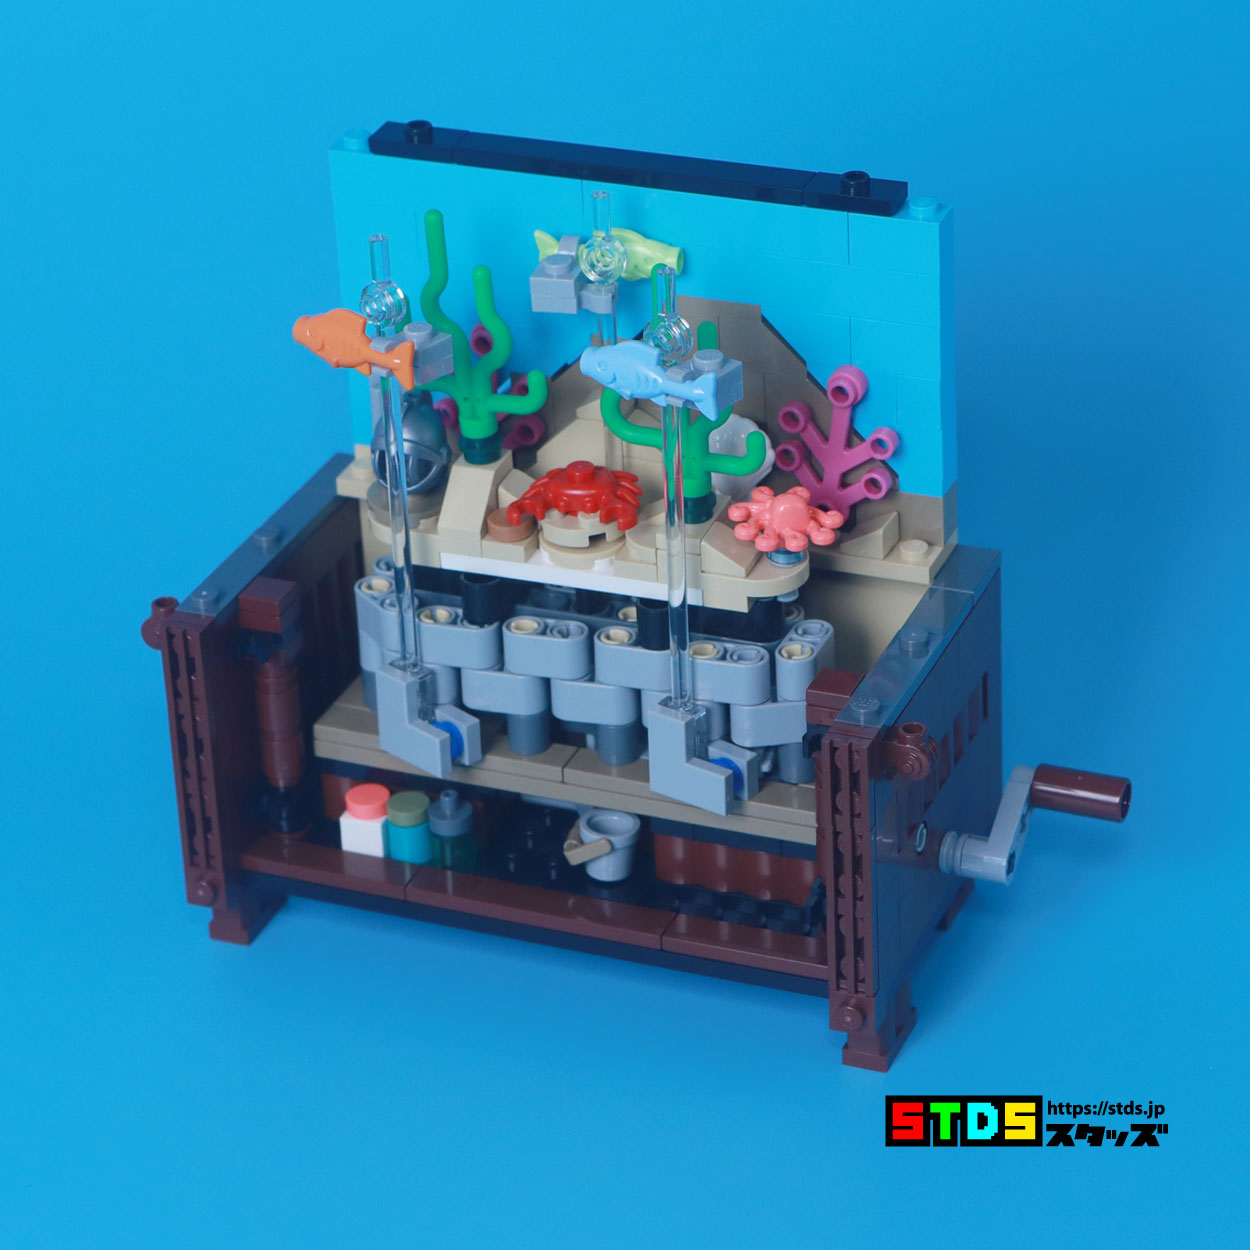 Fish Swim So Fast! LEGO Bricklink 910015 Clockwork Aquarium Review